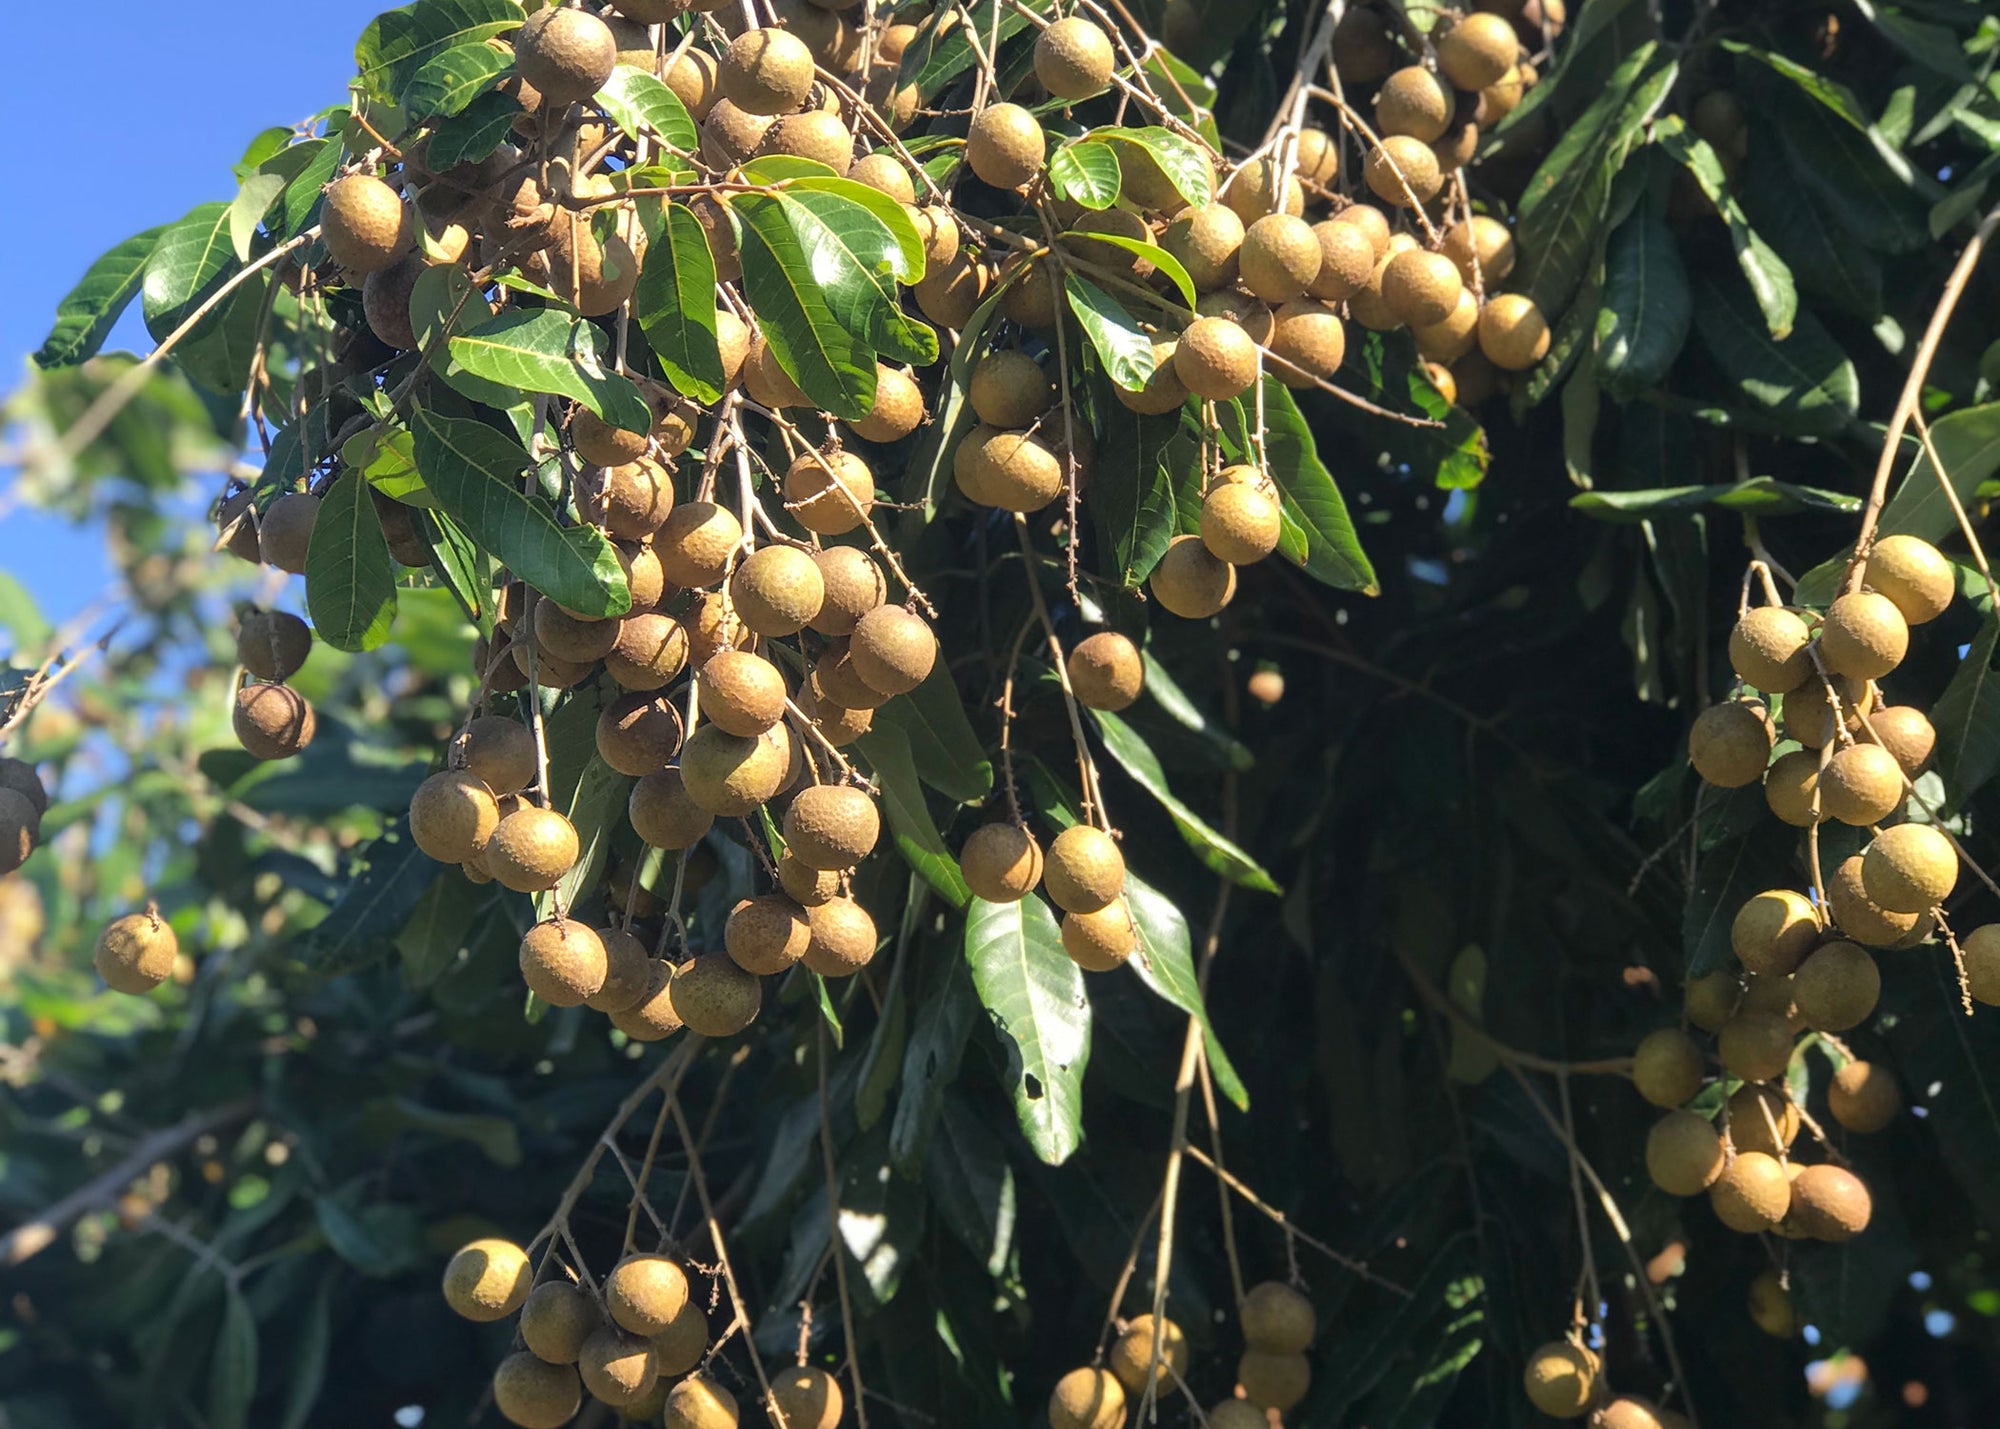 Tree with fresh, ripe longan fruit.